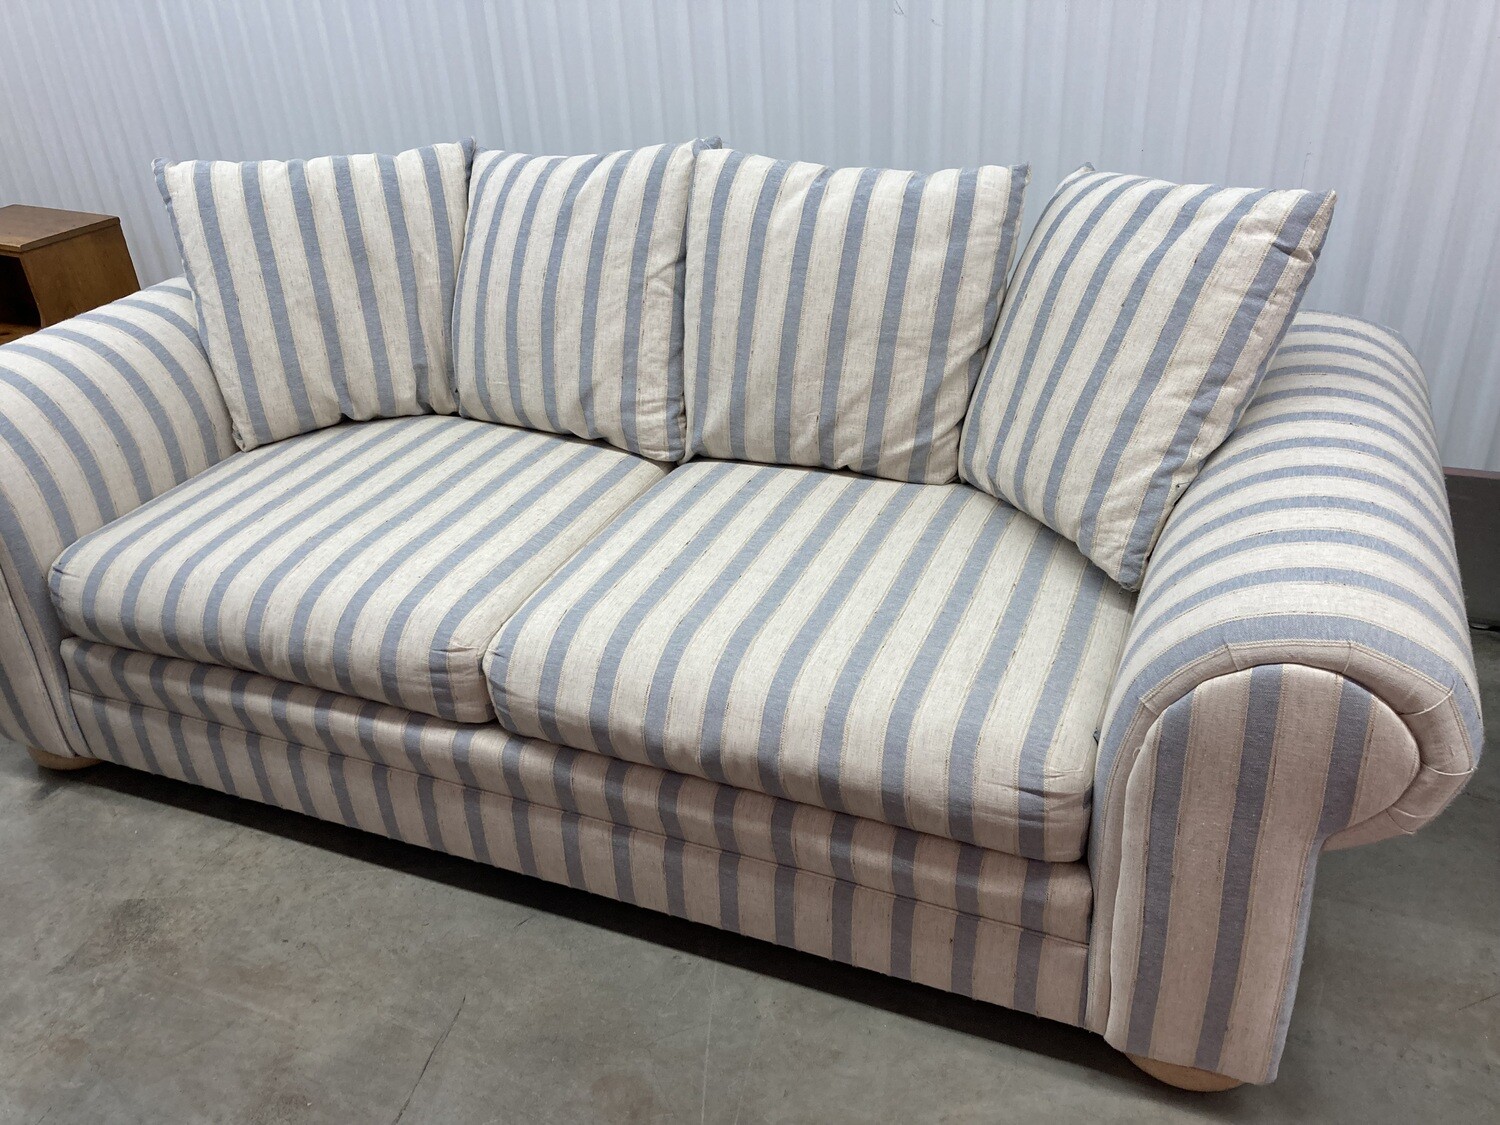 Blue/Cream Striped Sofa, great condition! #2324